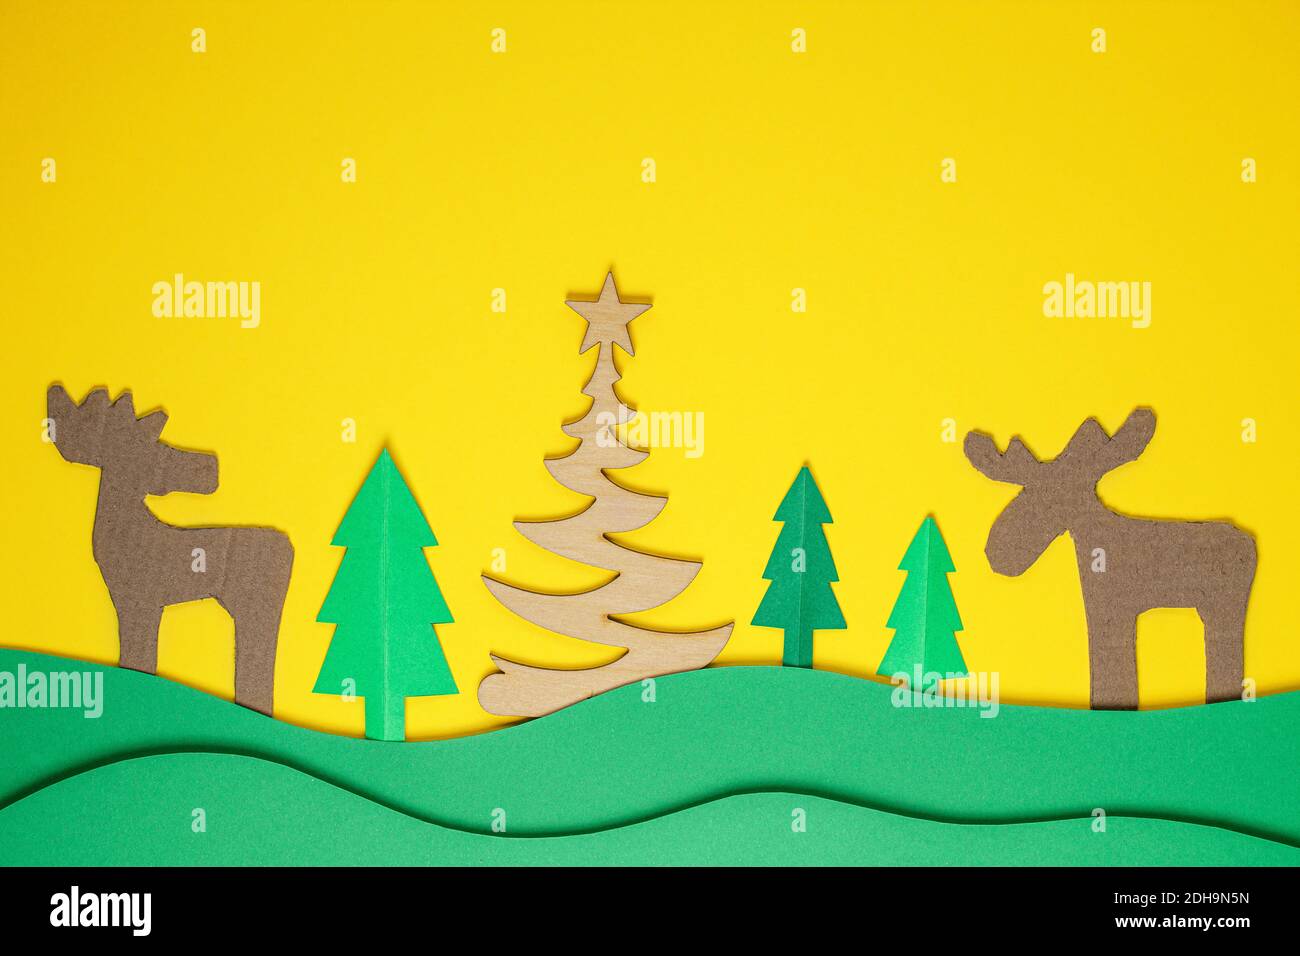 Weihnachtsbaum Papier schneiden Design papercraft Karte. Papier geschnitten Weihnachtsbäume und Hirsche. Kreative Gestaltung von weihnachten Hintergrund mit Papier Tanne Baum. Stockfoto